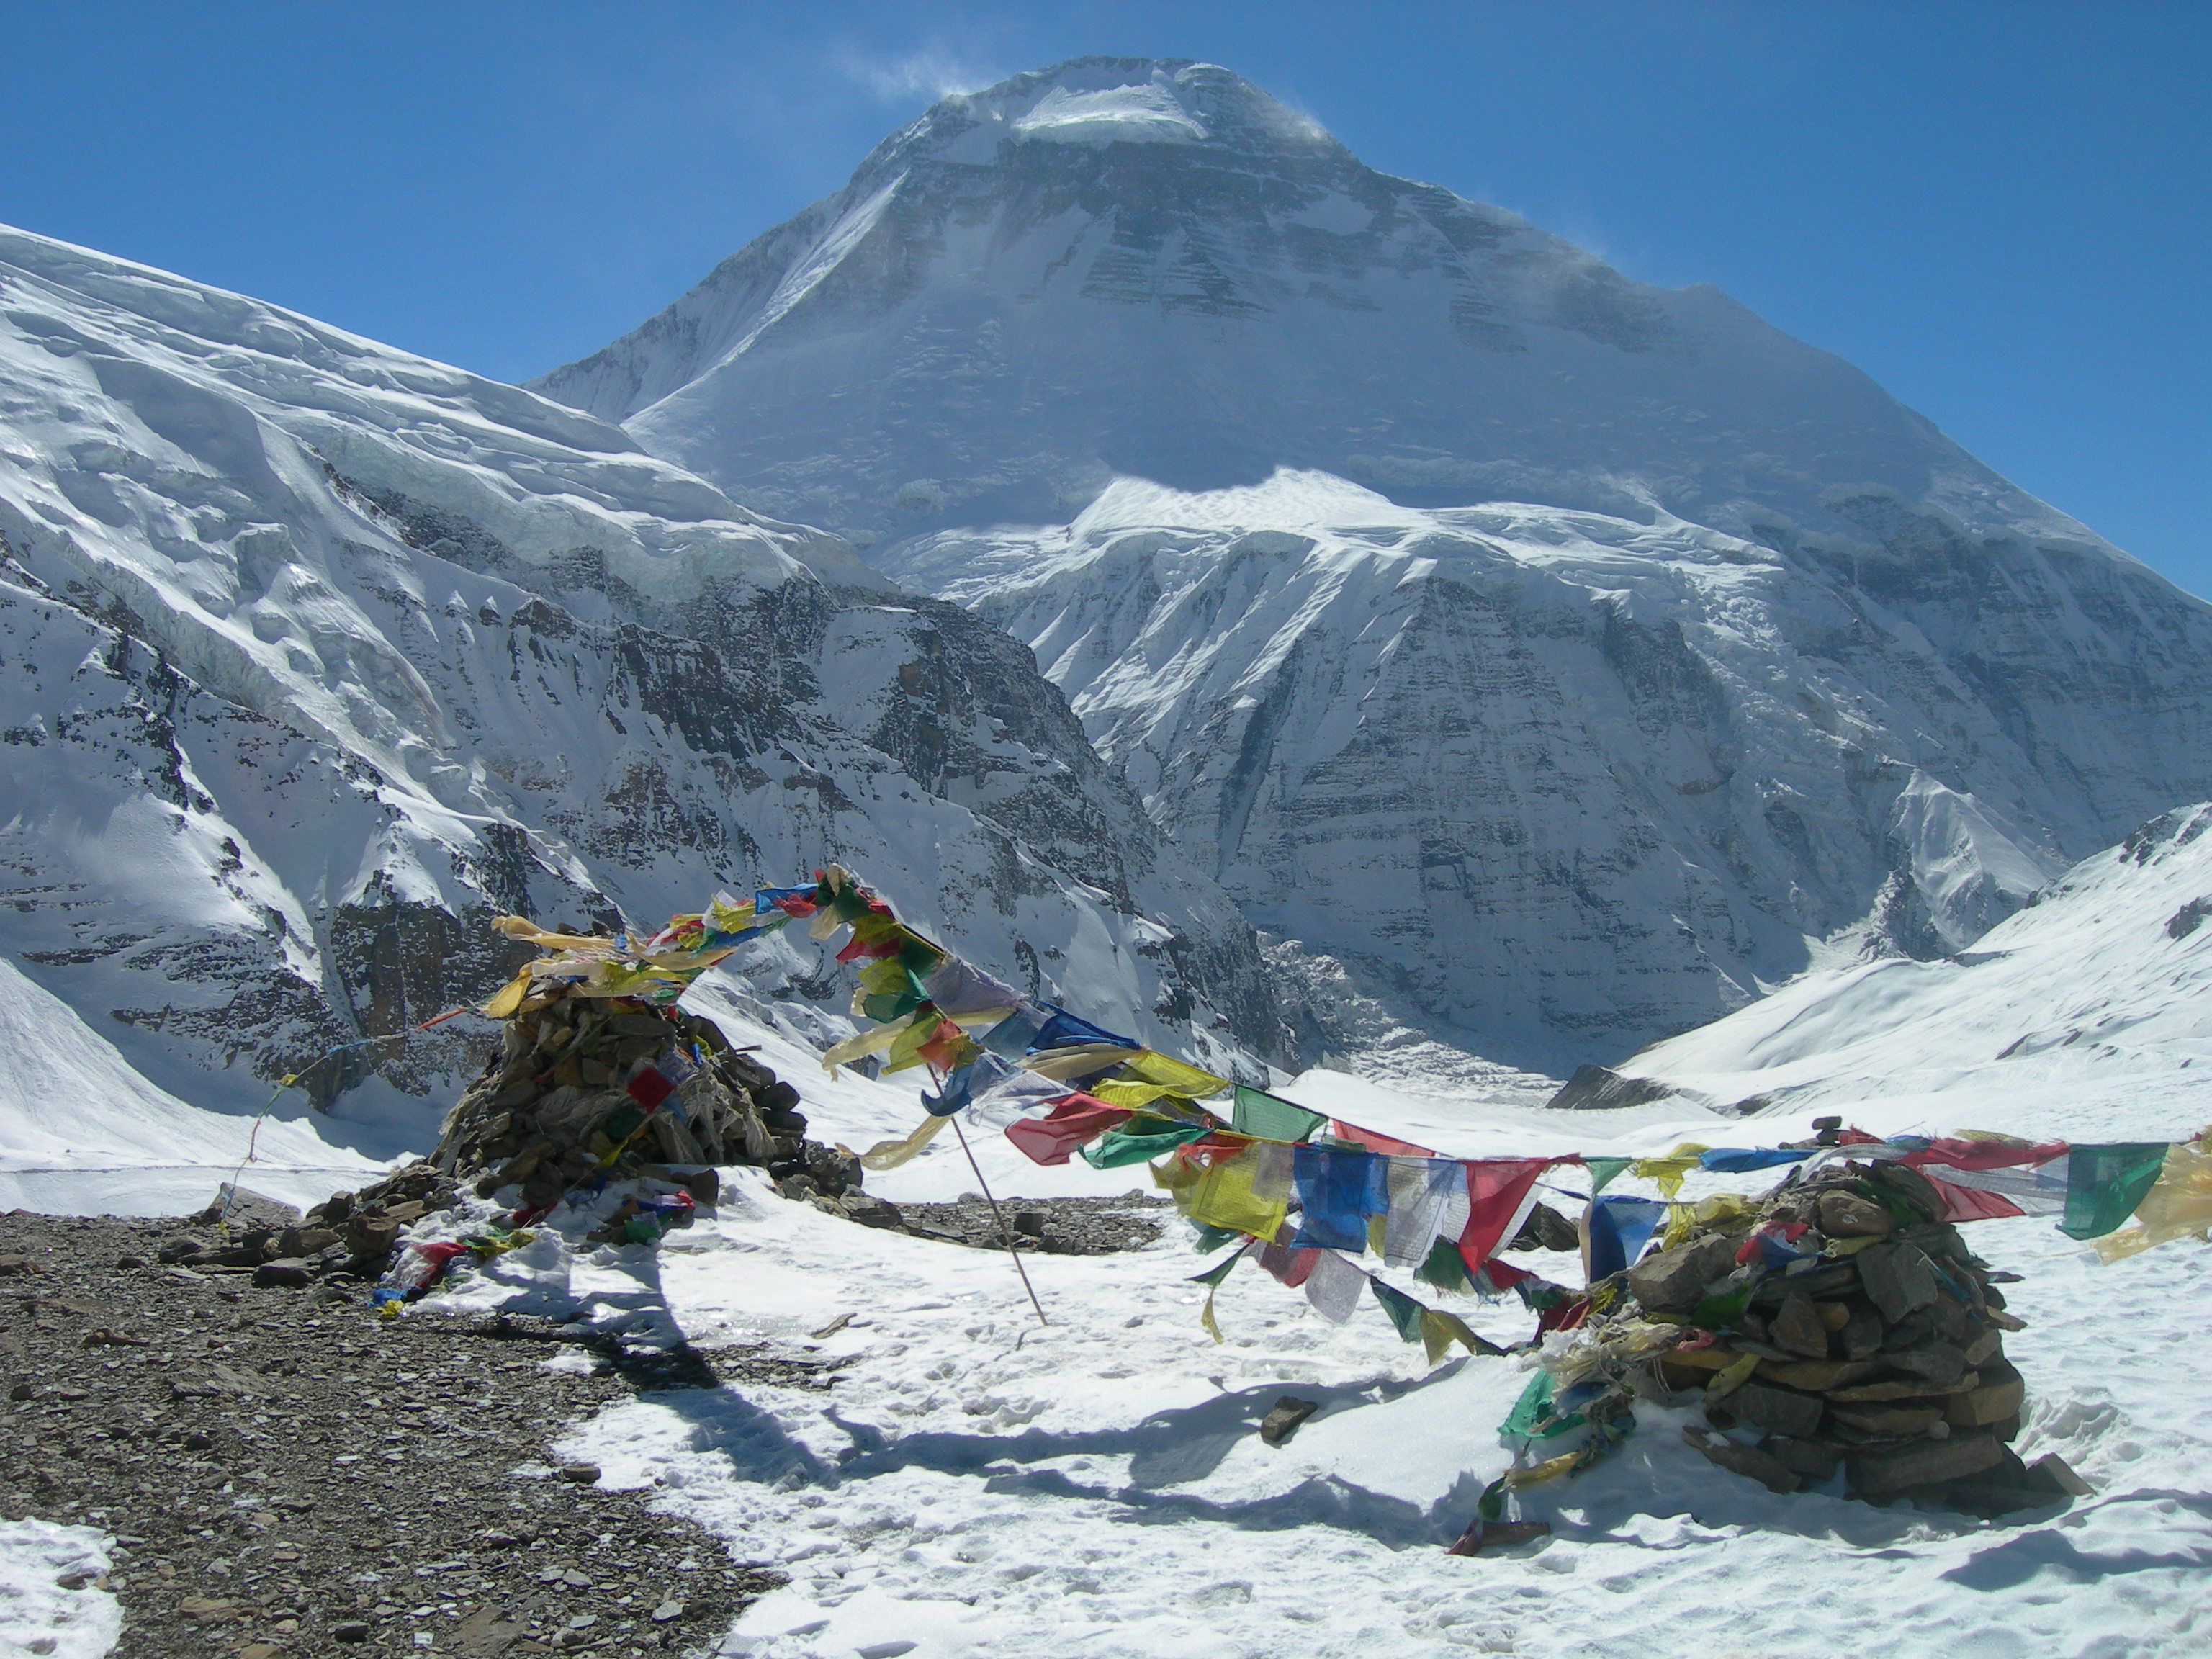 Ali   Saeidi   NeghabeKoohestaN, Mount Everest